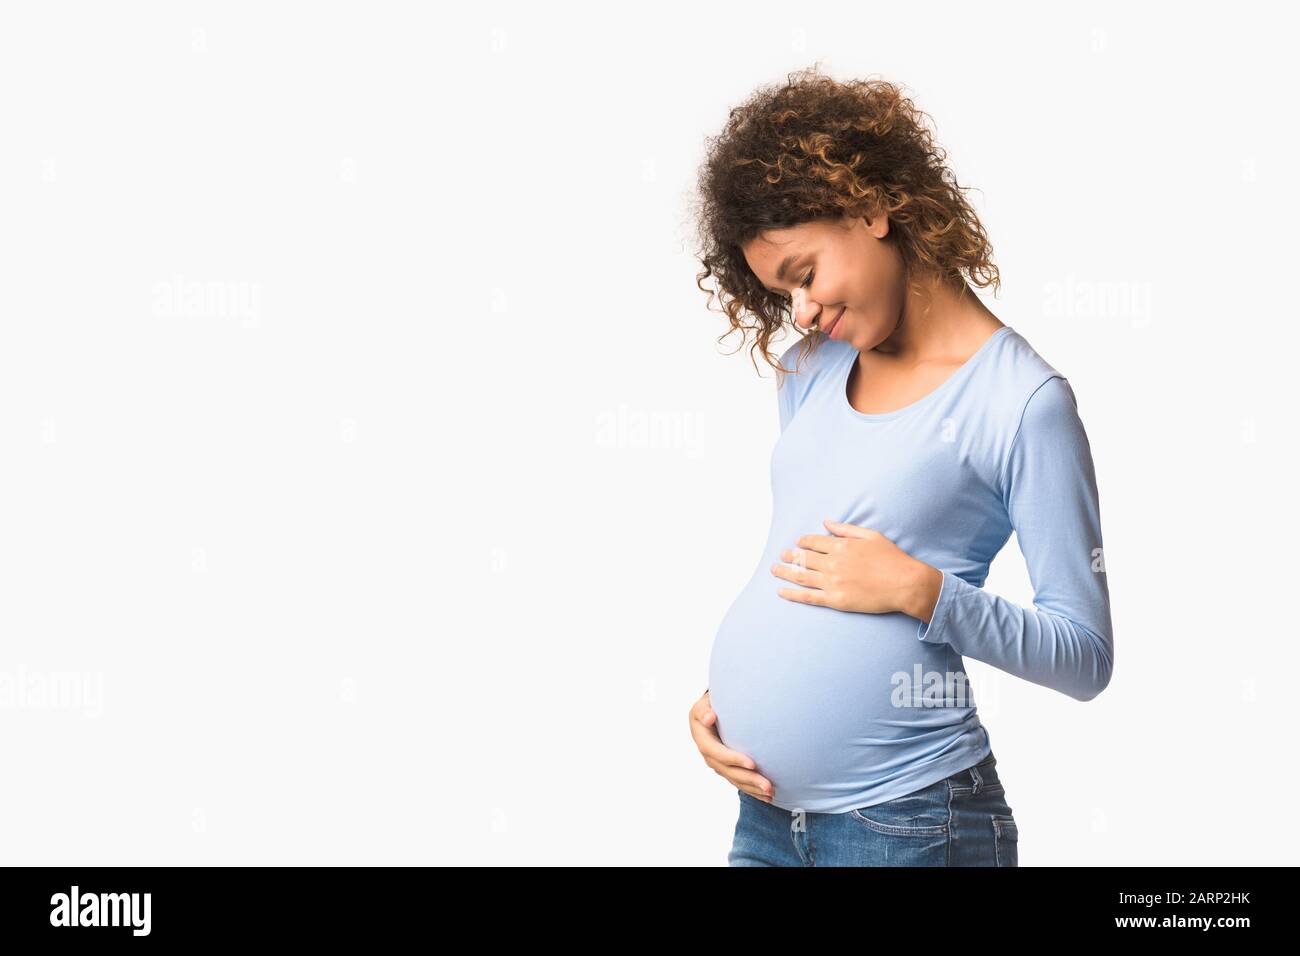 Schwangerschaft genießen. Werdende Frau, die ihren Bauch umarmte Stockfoto